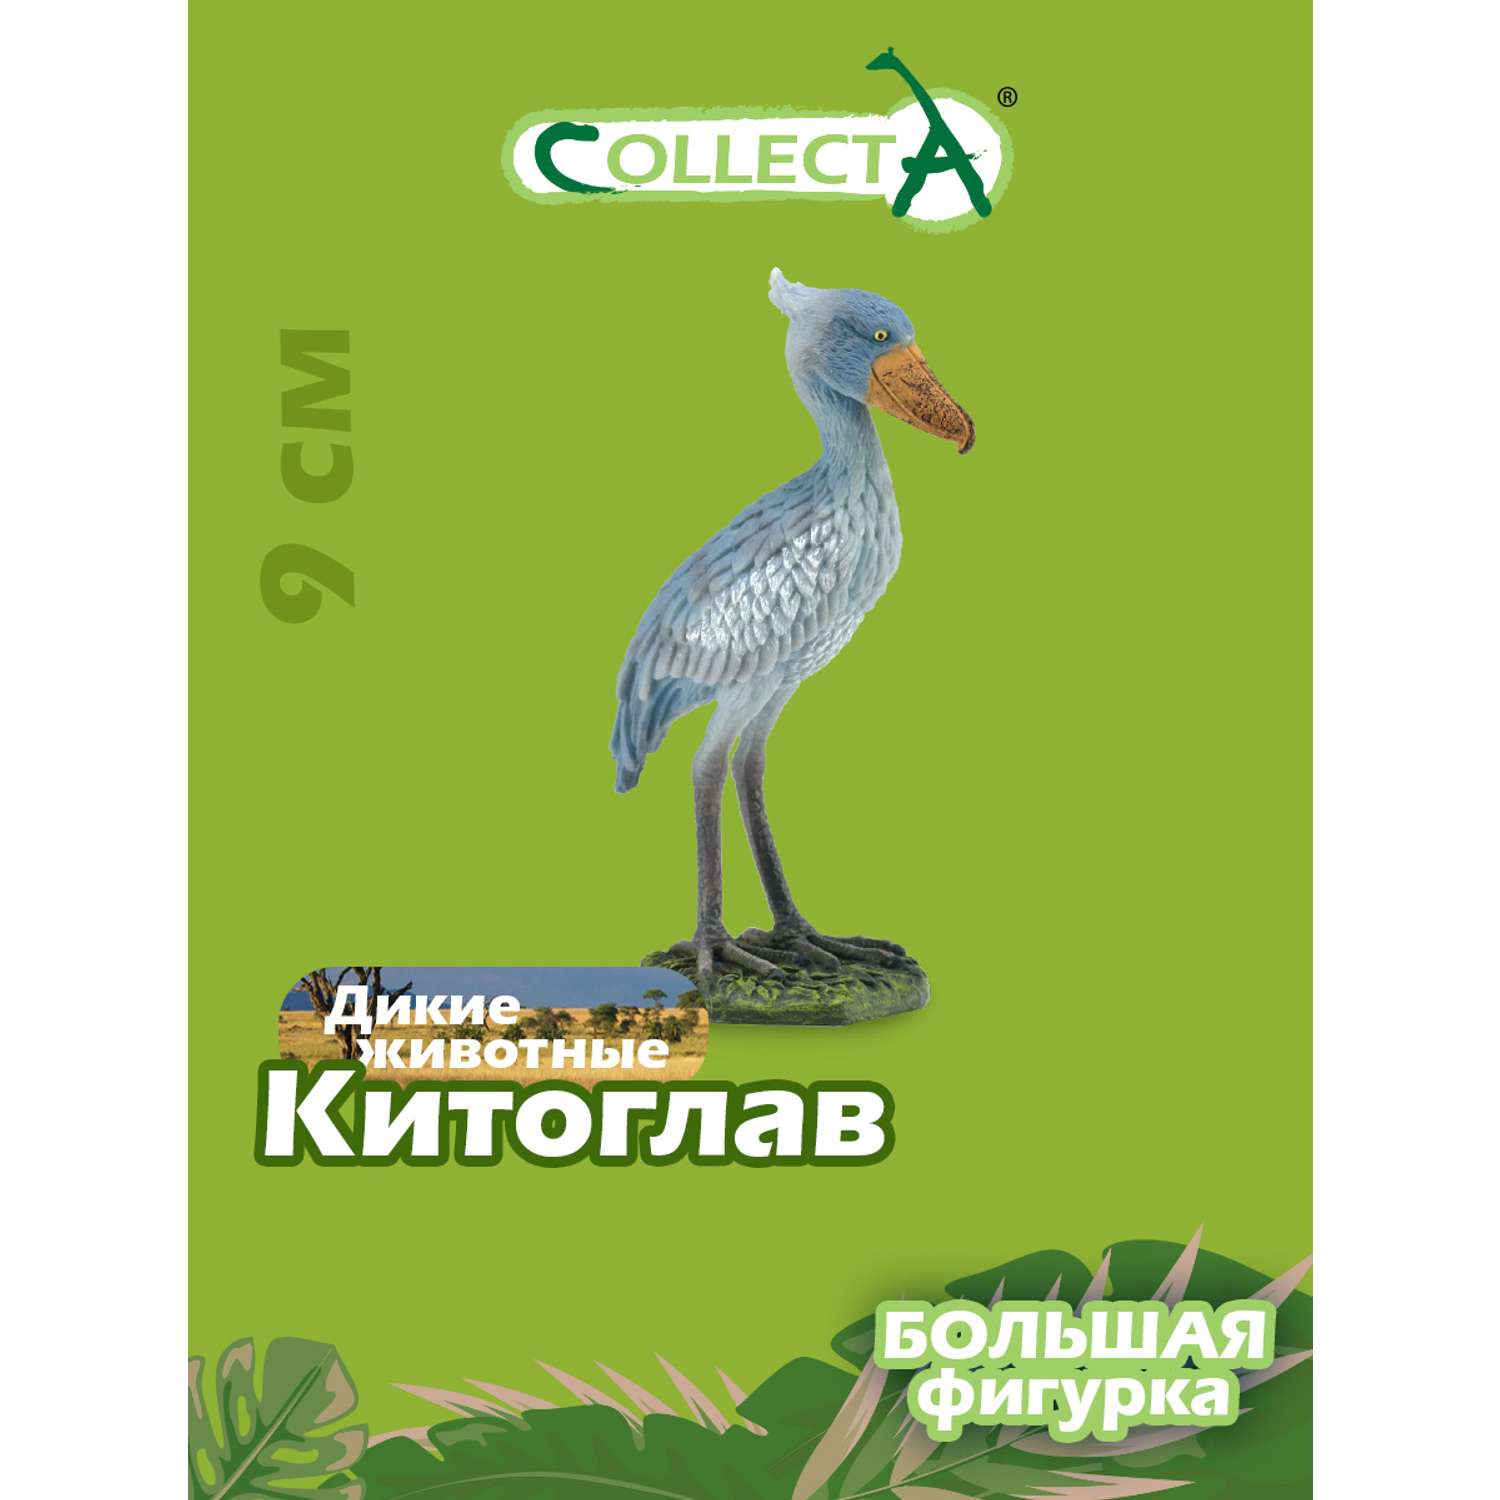 Игрушка Collecta Китоглав фигурка птицы купить по цене 634 ₽ в  интернет-магазине Детский мир